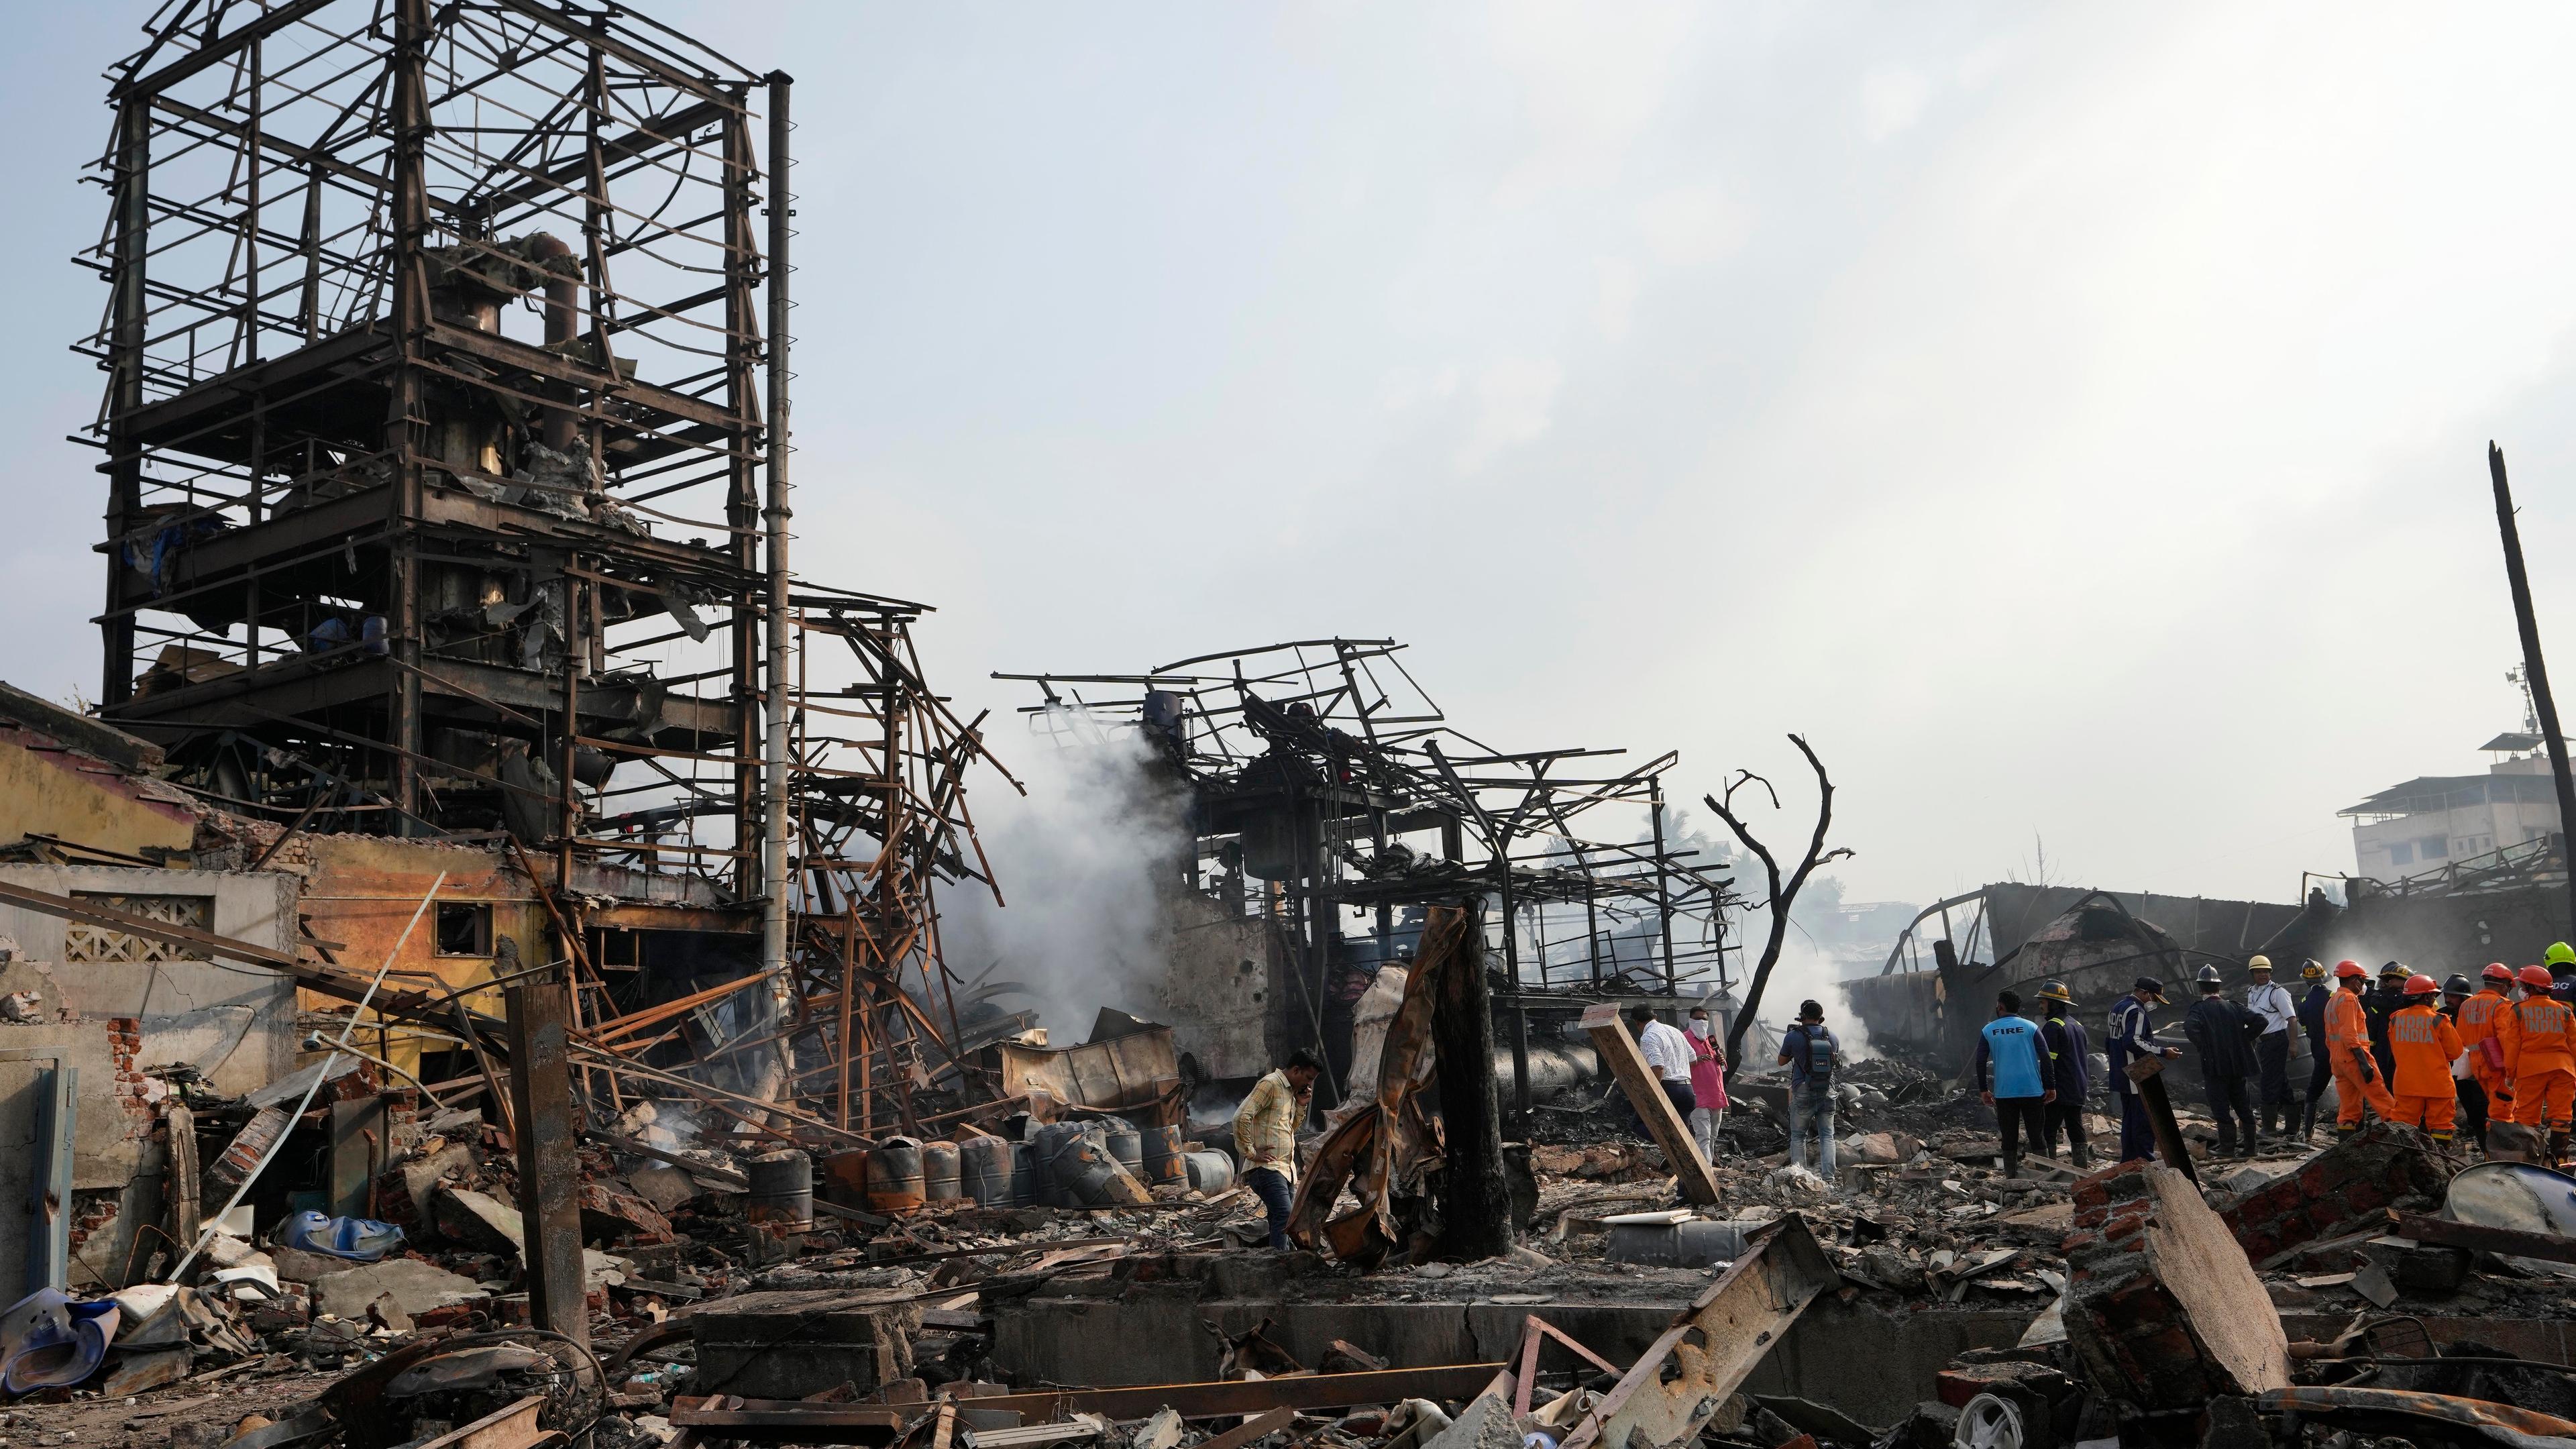 Eine Fabrik liegt in Trümmern, am Rand stehen Rettungskräfte